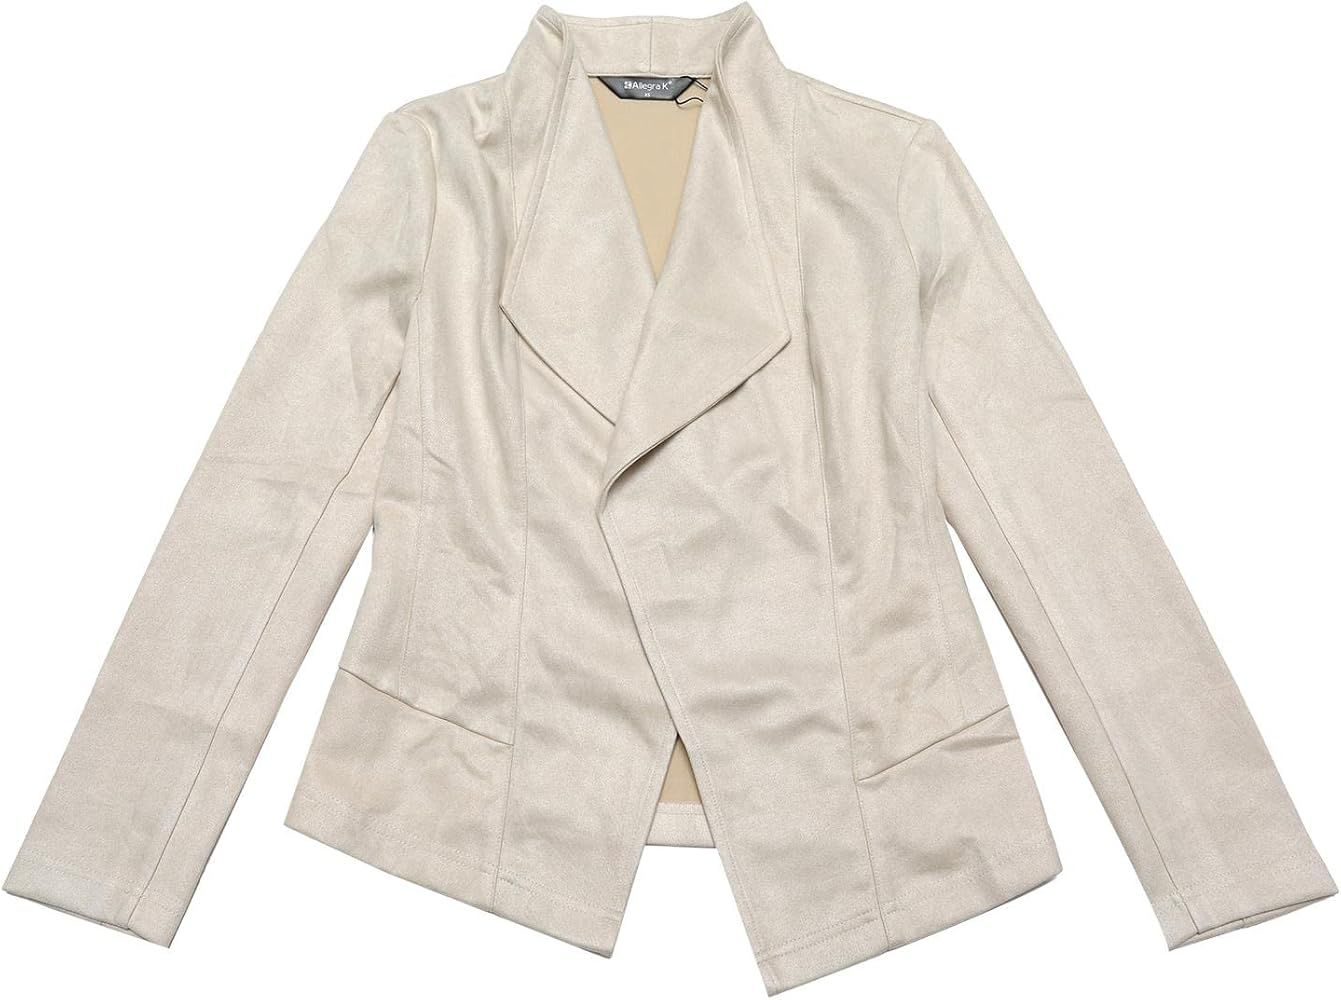 Allegra K Women's Faux Suede Jacket Open Front Lapel Draped Outwear Cardigan | Amazon (US)